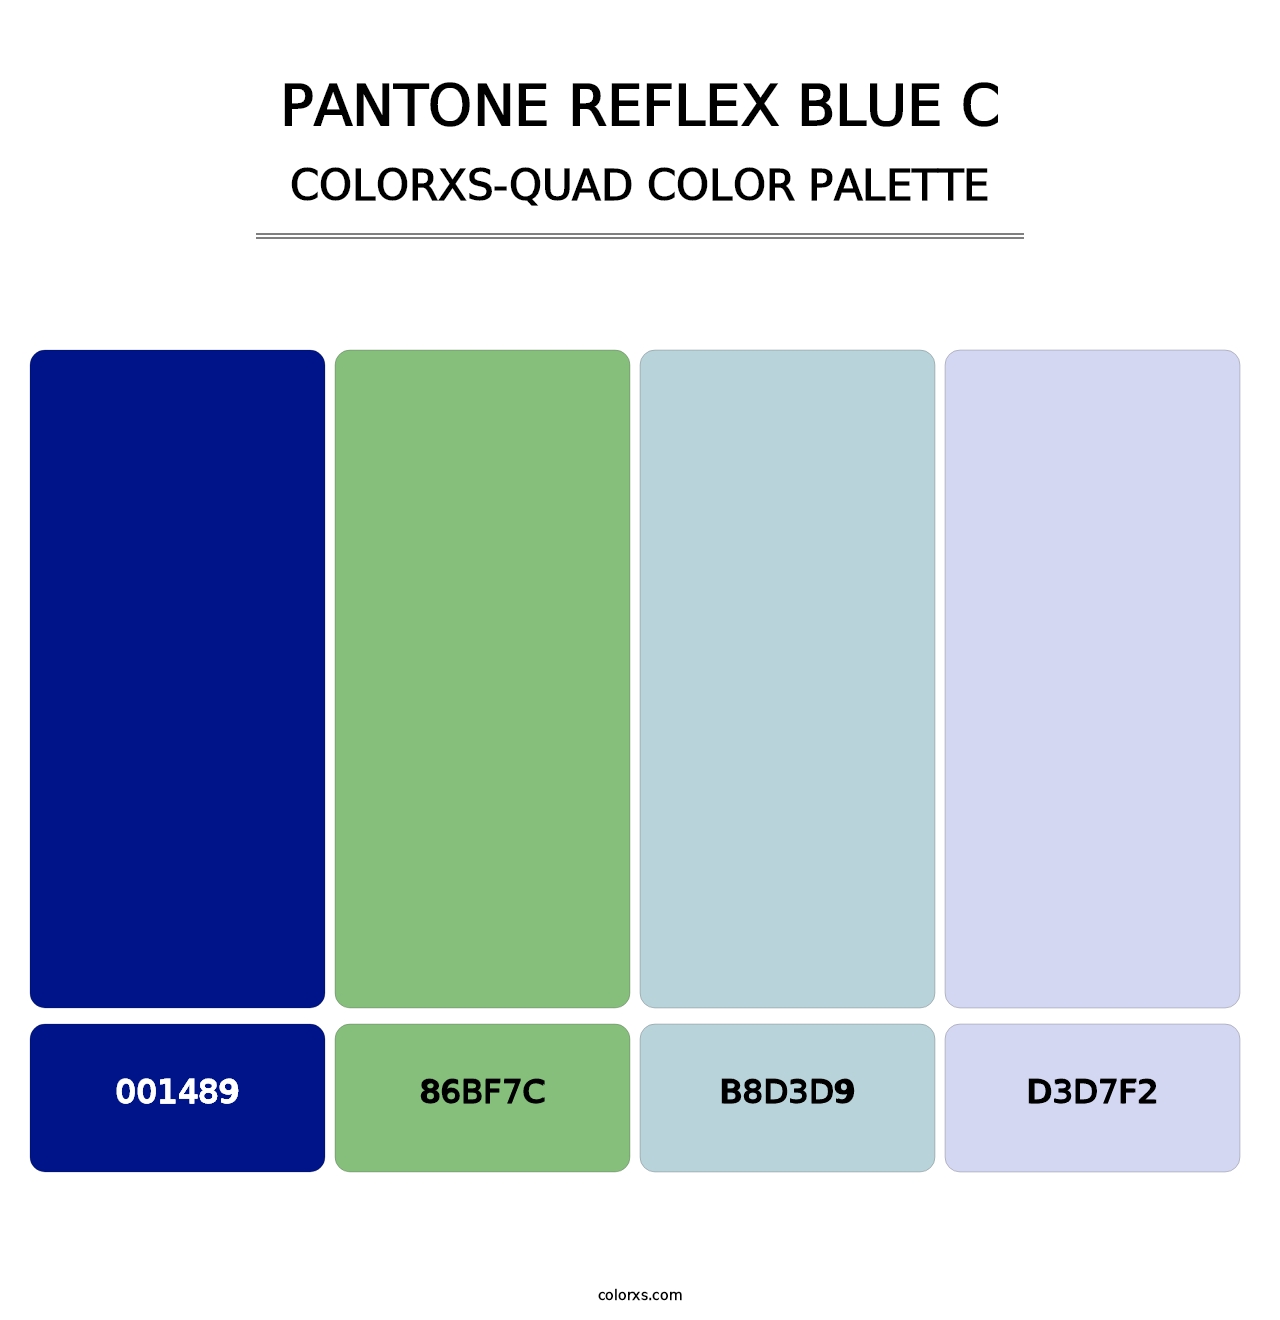 PANTONE Reflex Blue C - Colorxs Quad Palette